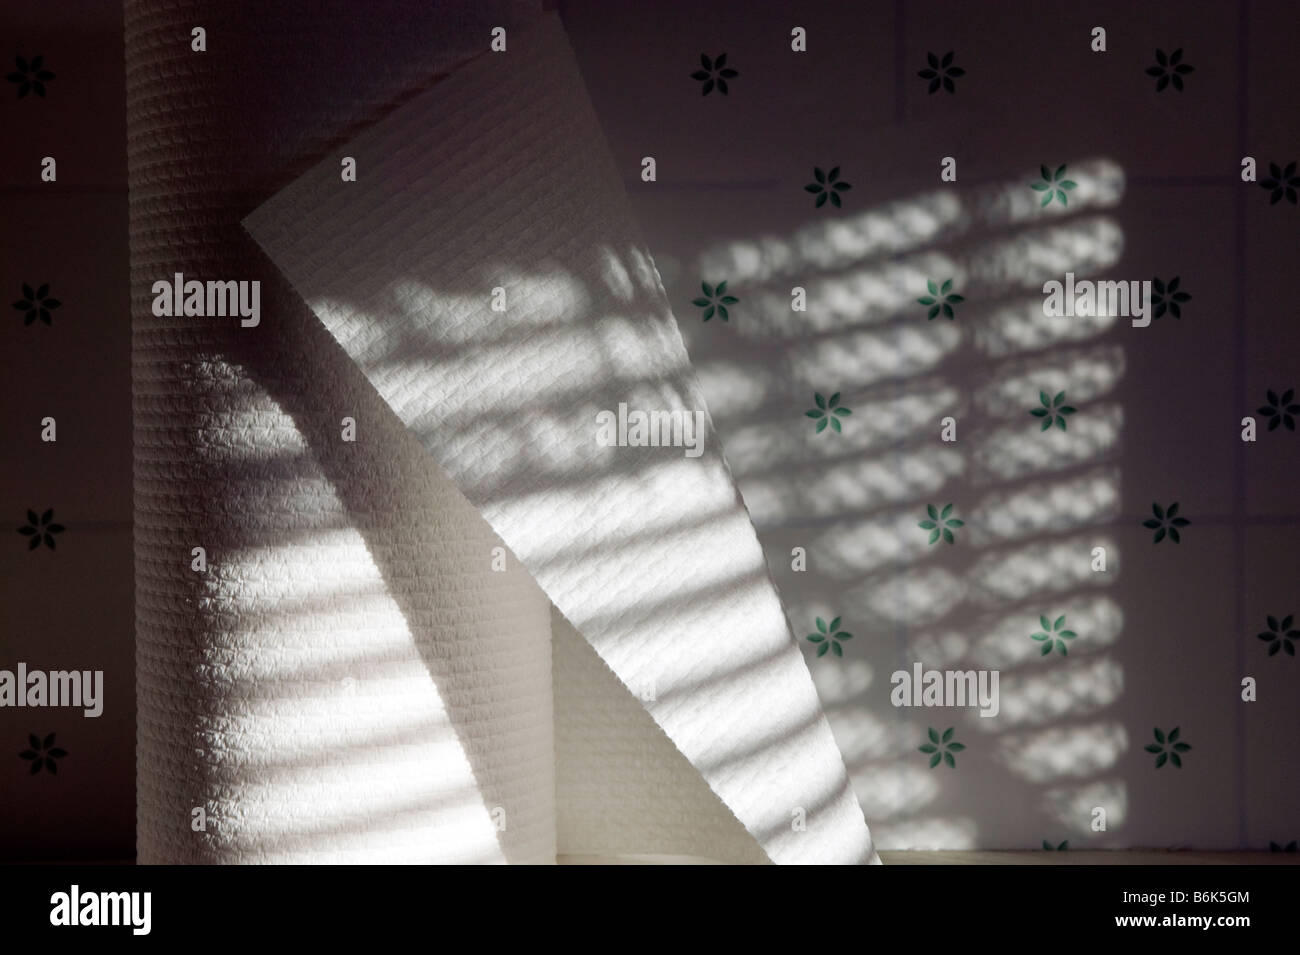 Sonnenlicht durch Jalousien schaffen ein gestreiftes Muster von Schatten auf einer Rolle von Papierhandtüchern. Stockfoto